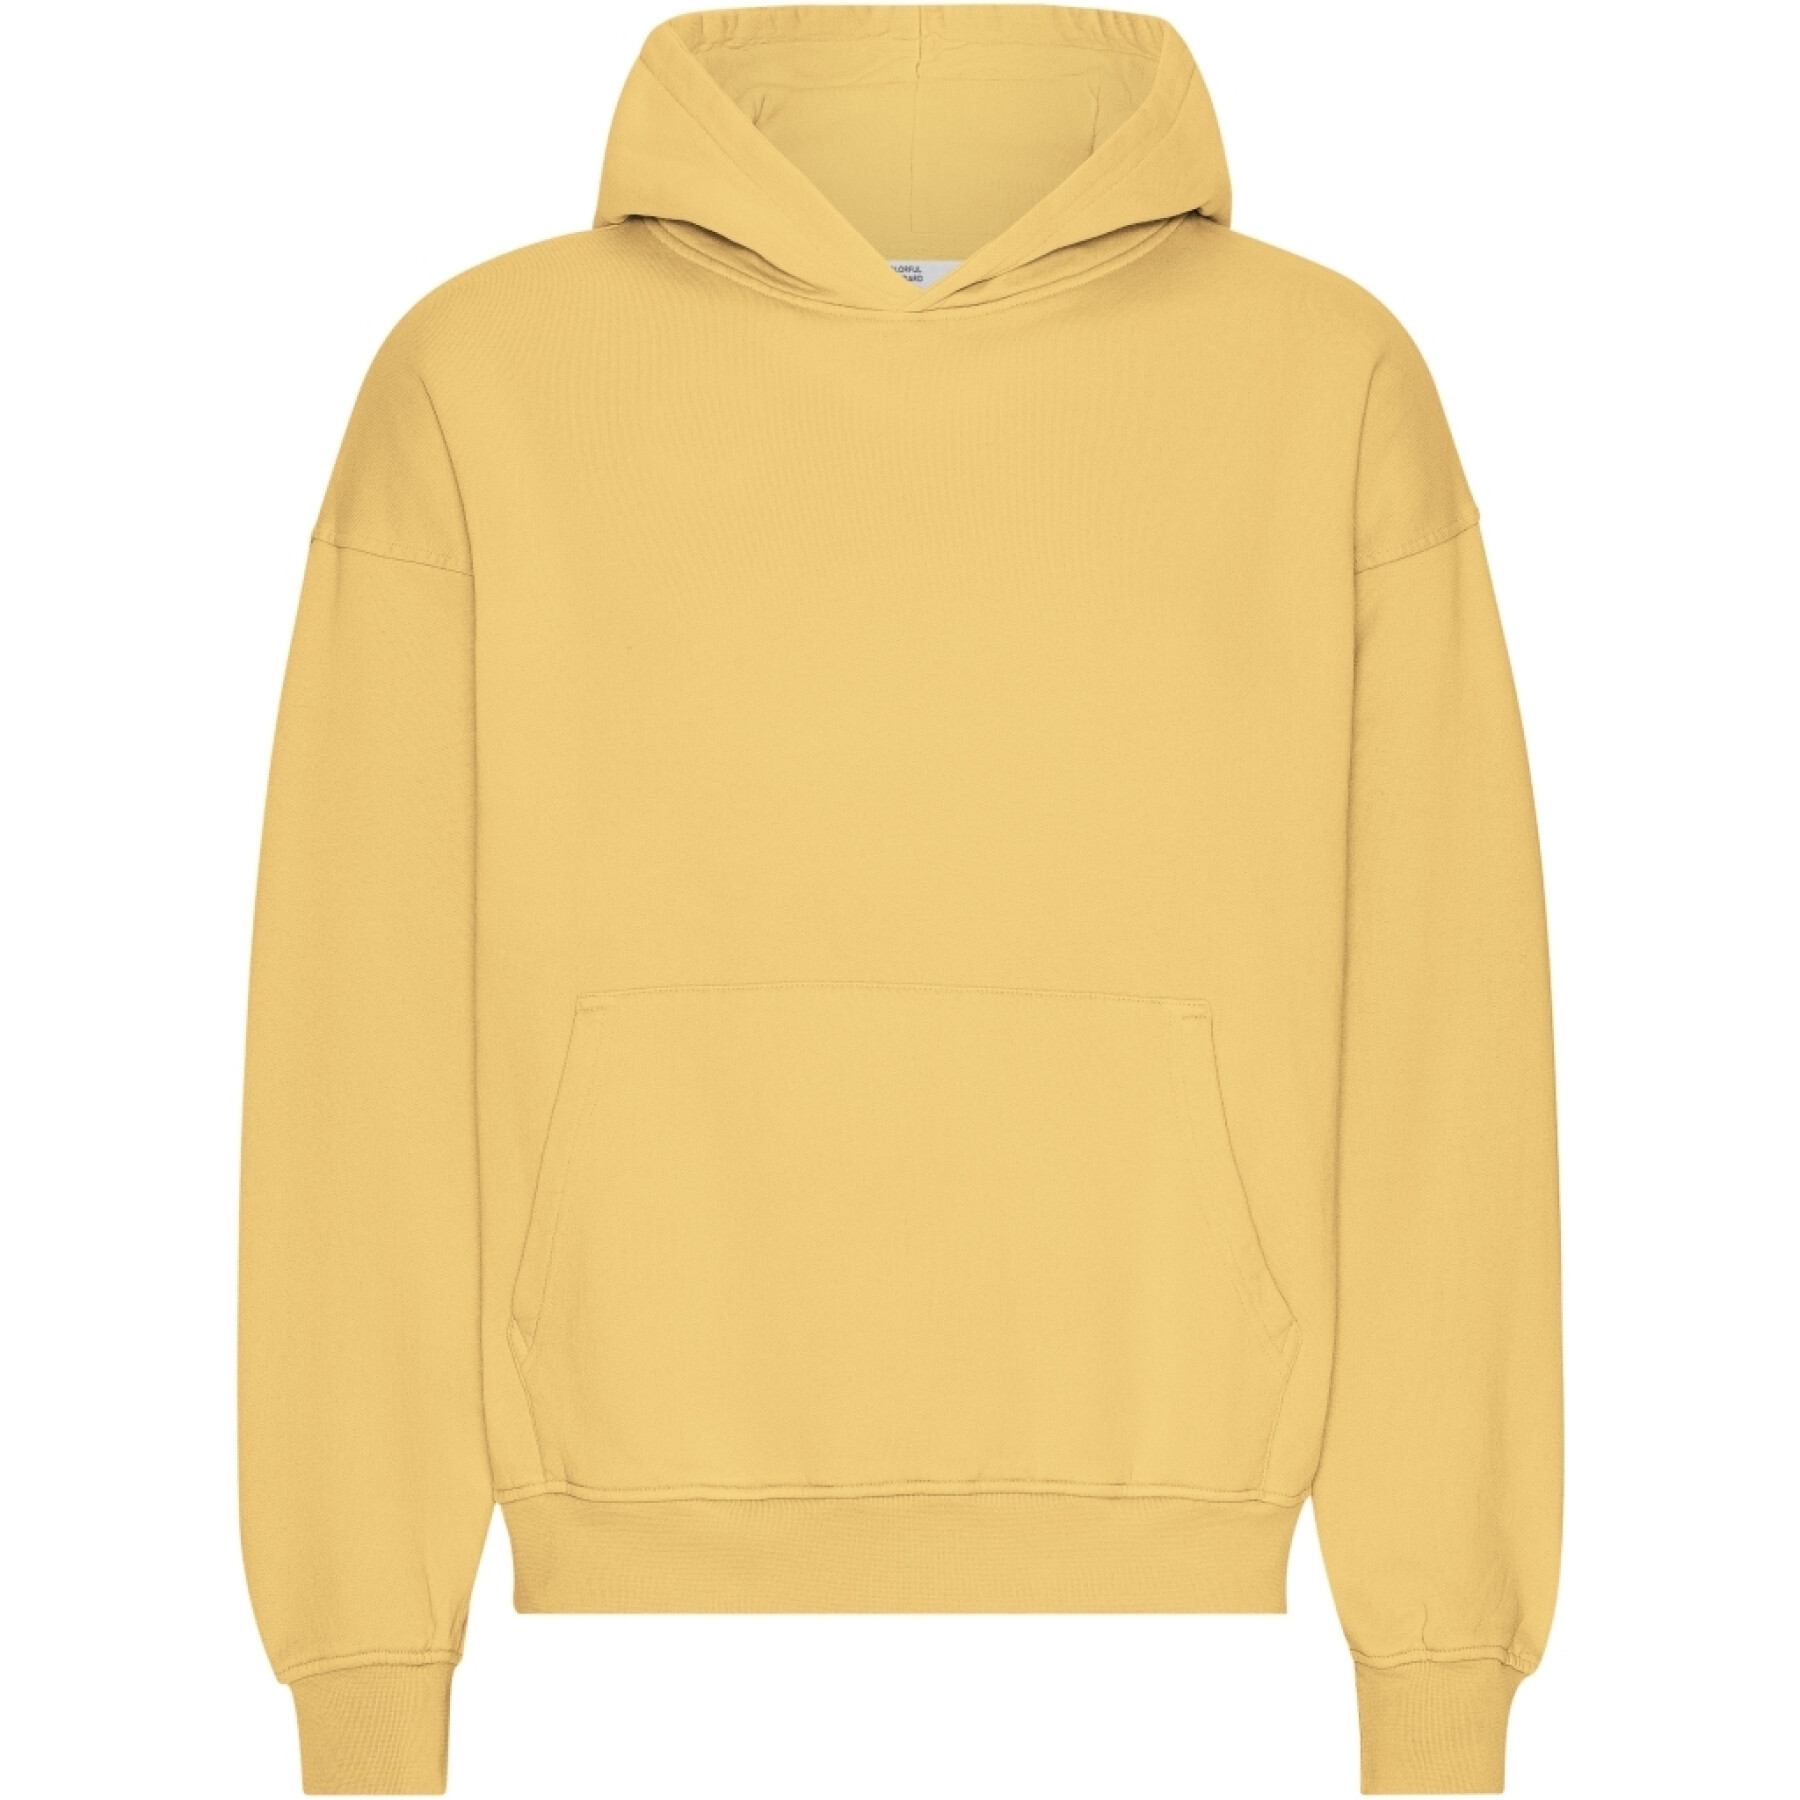 Oversized hooded sweatshirt Colorful Standard Organic Lemon Yellow